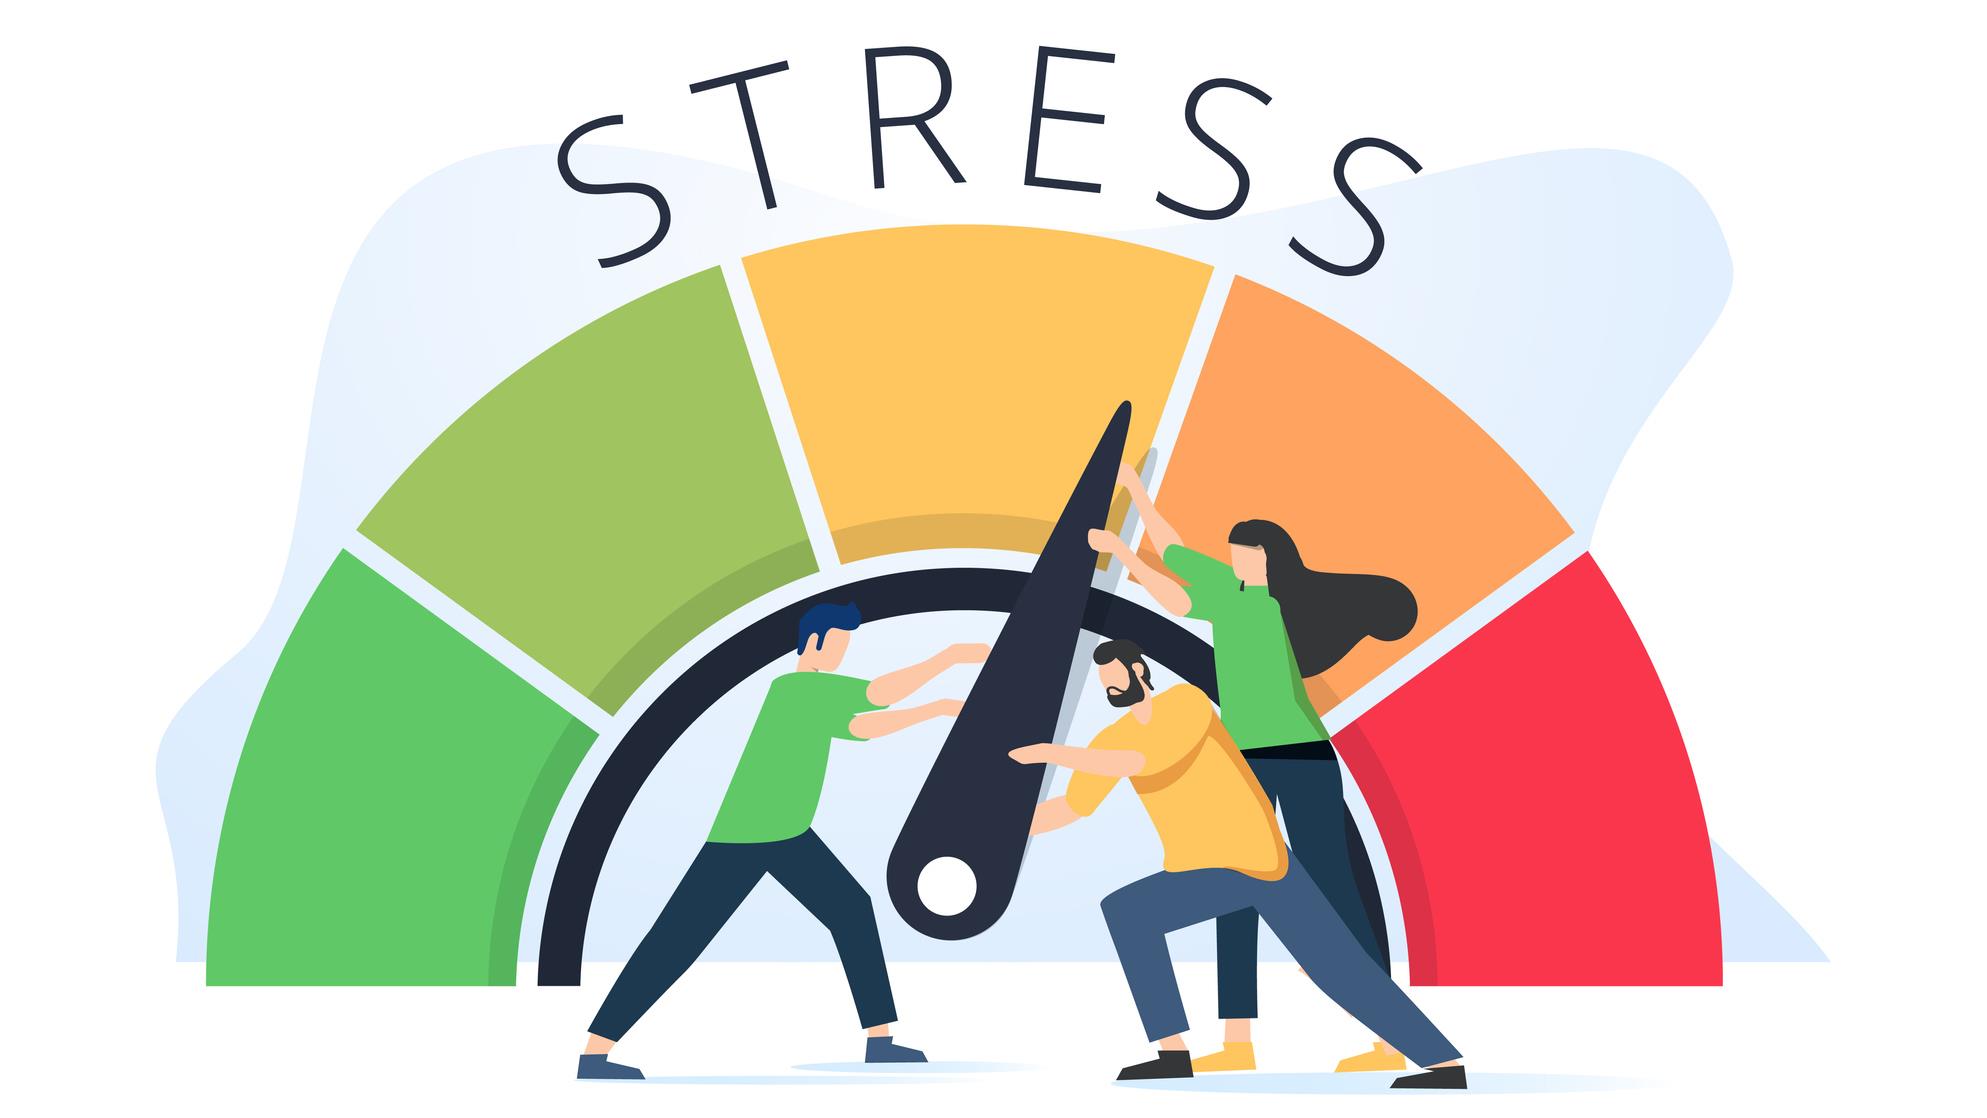 Sonia Lupien : Êtes-vous stressé.e ou zen ? (partie 2)
Sonia Lupien : Êtes-vous stressé.e ou zen ? (partie 2)